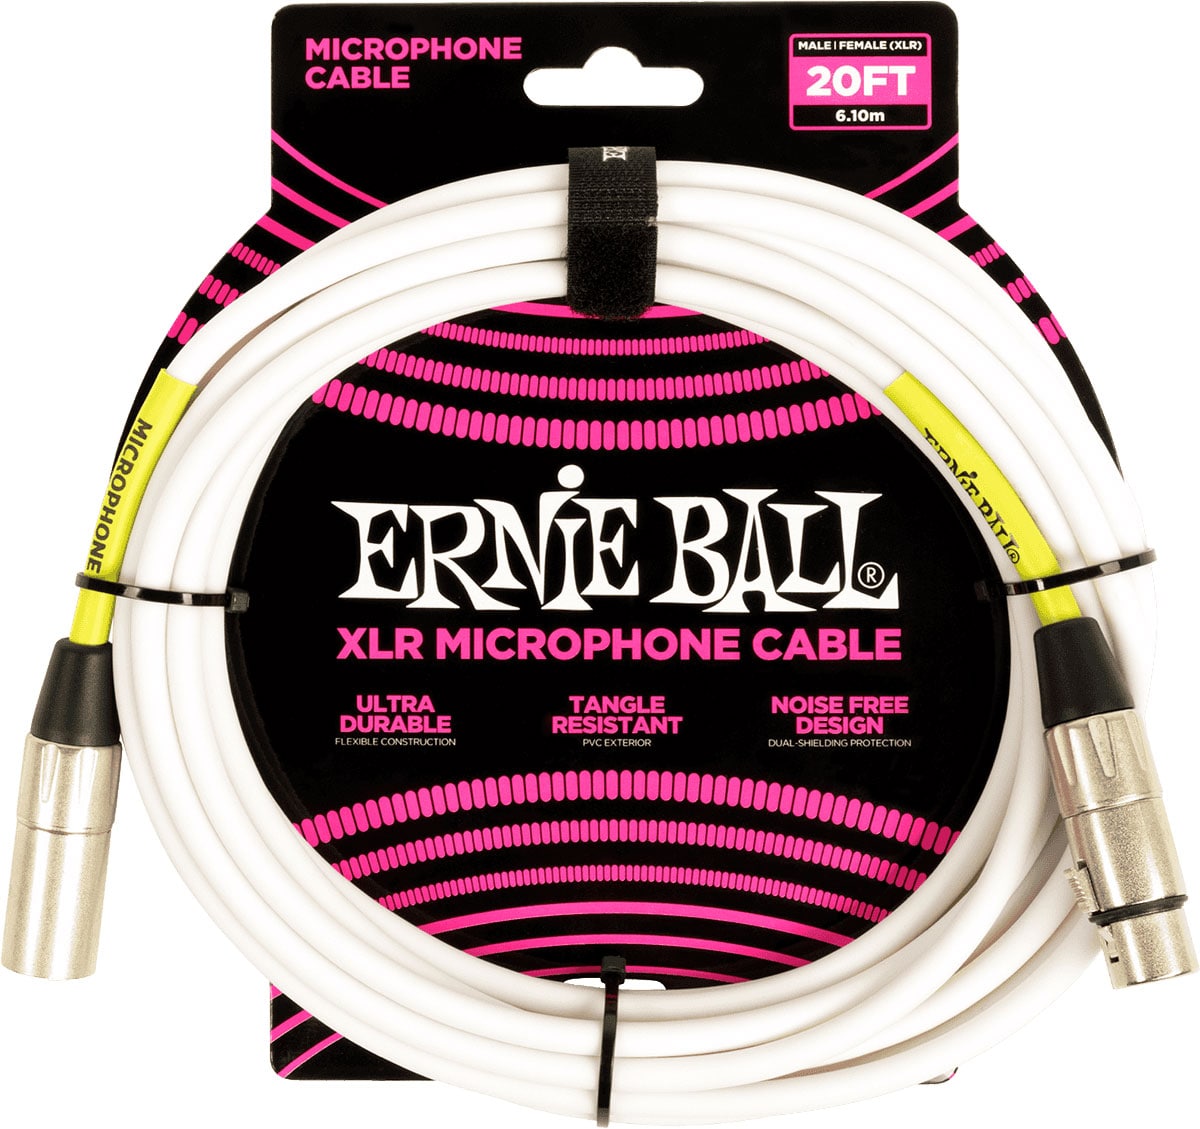 ERNIE BALL MICROPHONE CABLES CLASSIC XLR MALE/XLR FEMALE 6M WHITE